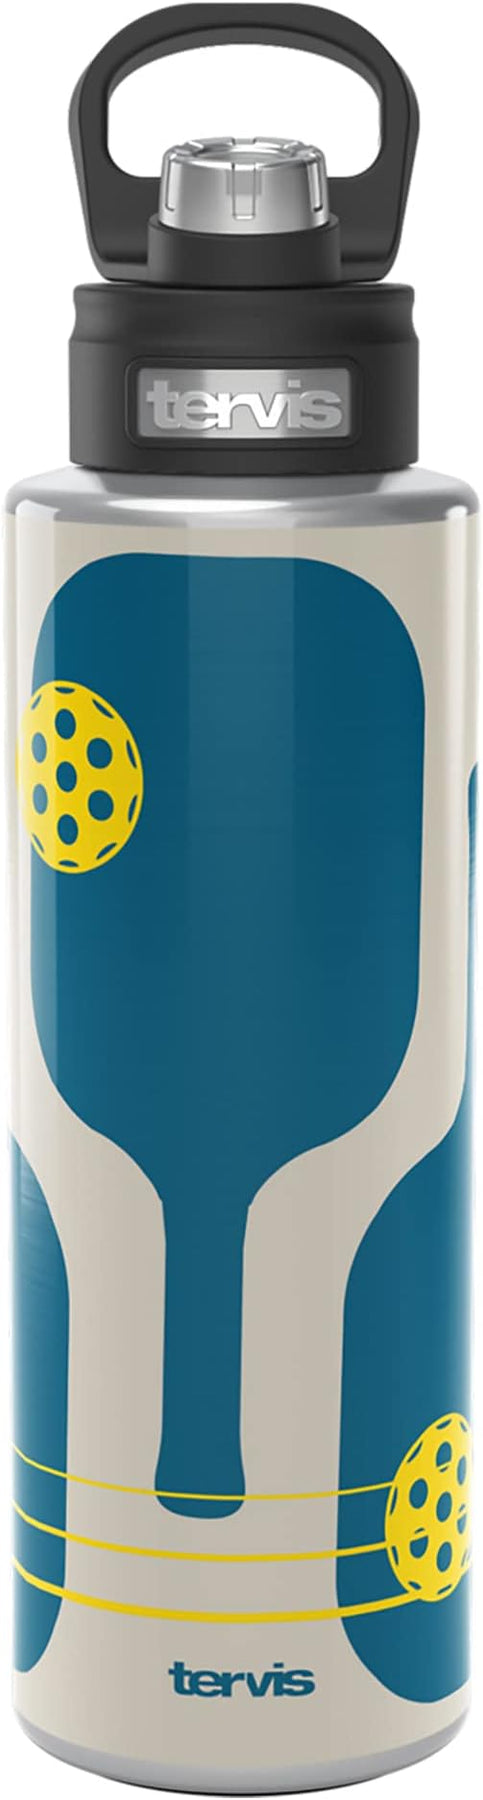 ZULU Personalized Kids Water Bottle. BPA Free Sippy Cup